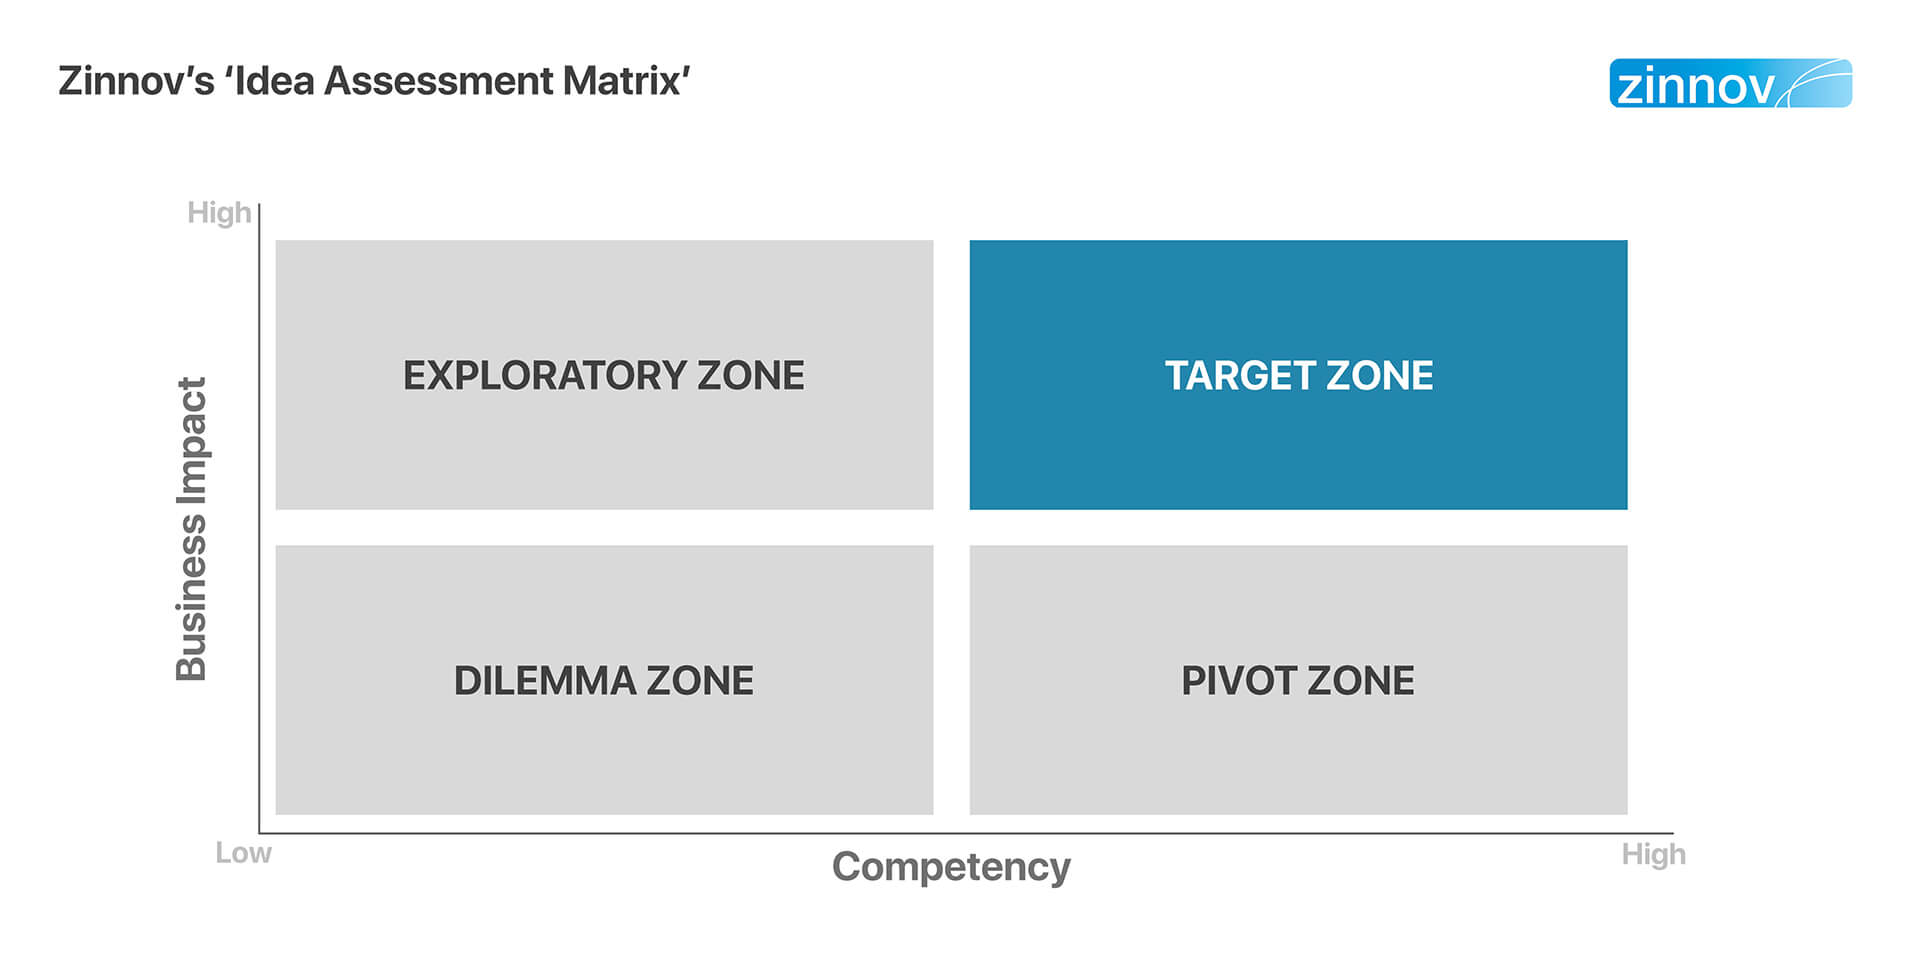 Zinnov's idea assessment matrix